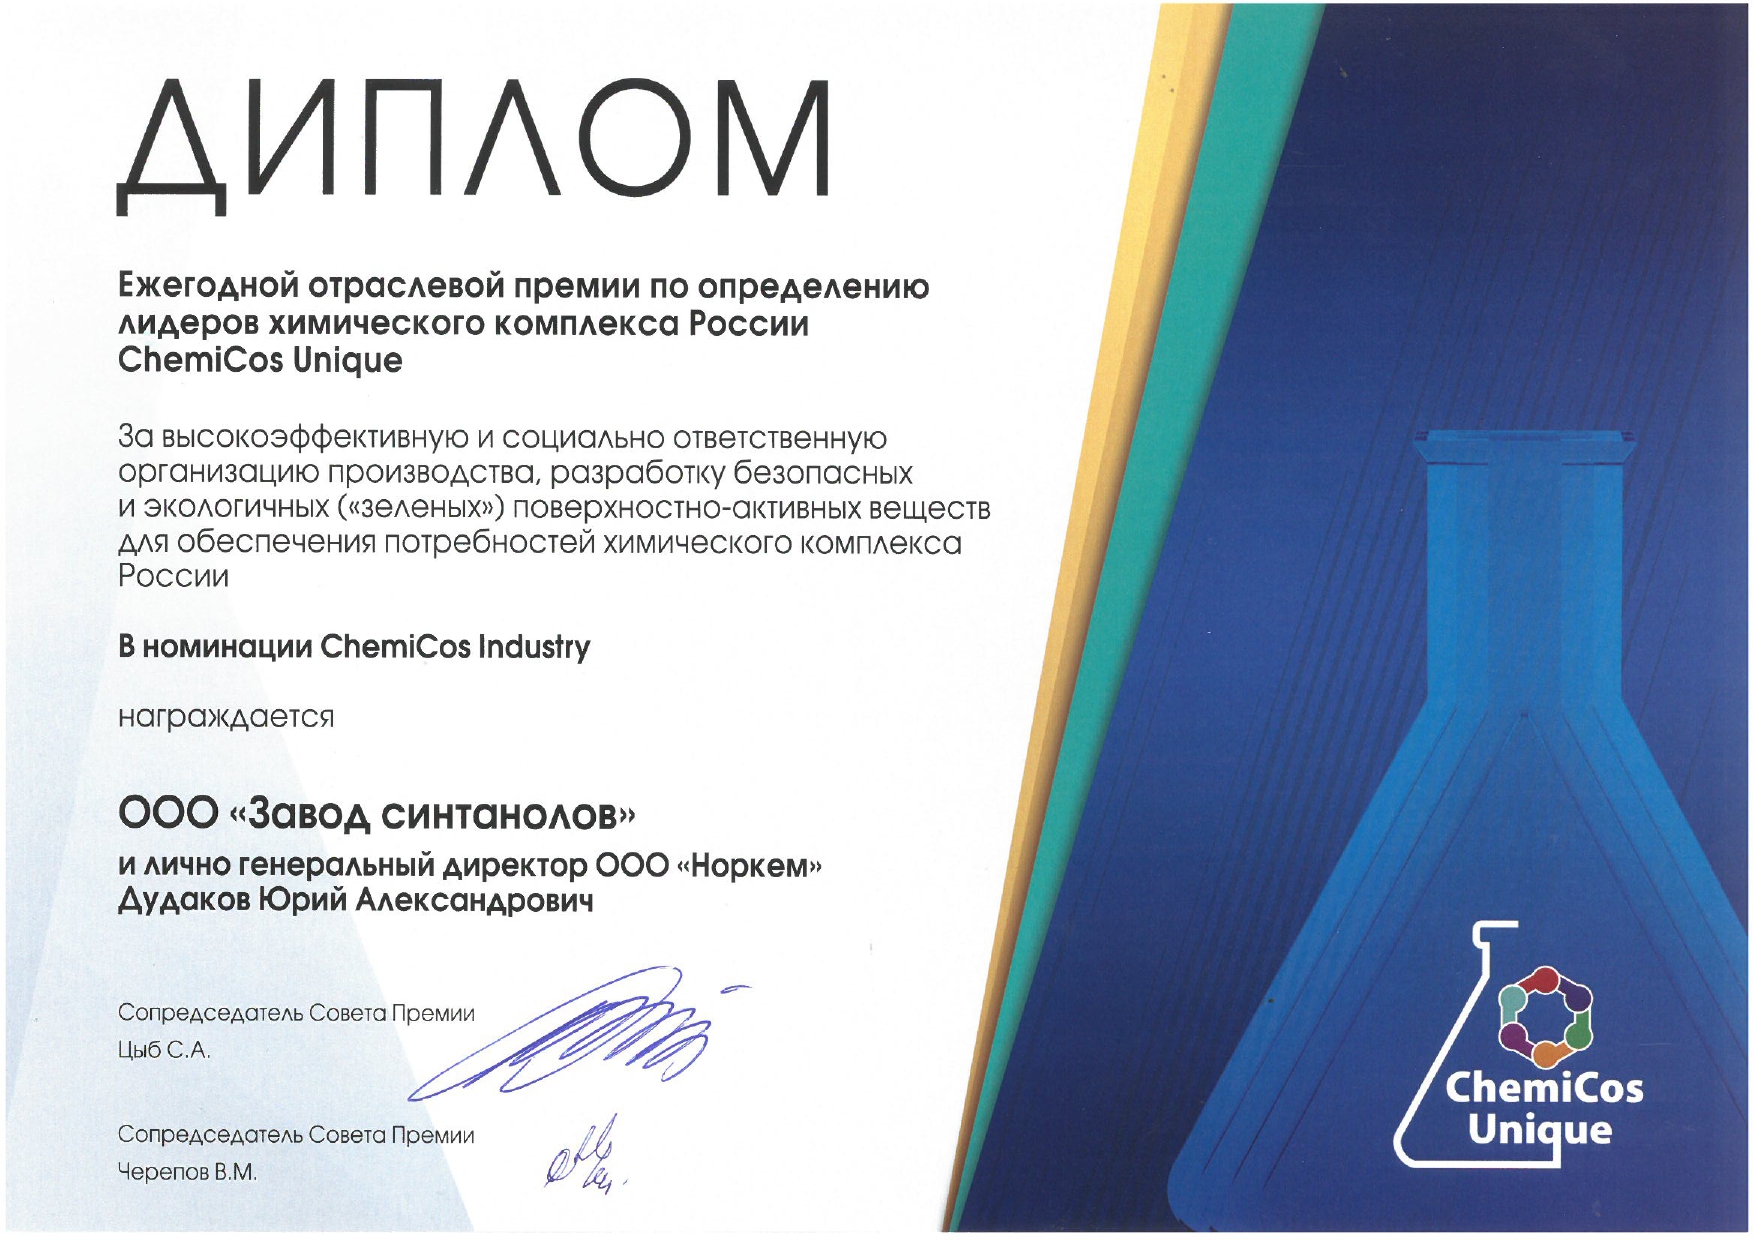 ООО «Завод синтанолов» стало лауреатом Ежегодной отраслевой премии по определению лидеров химического комплекса России ChemiCos Unique